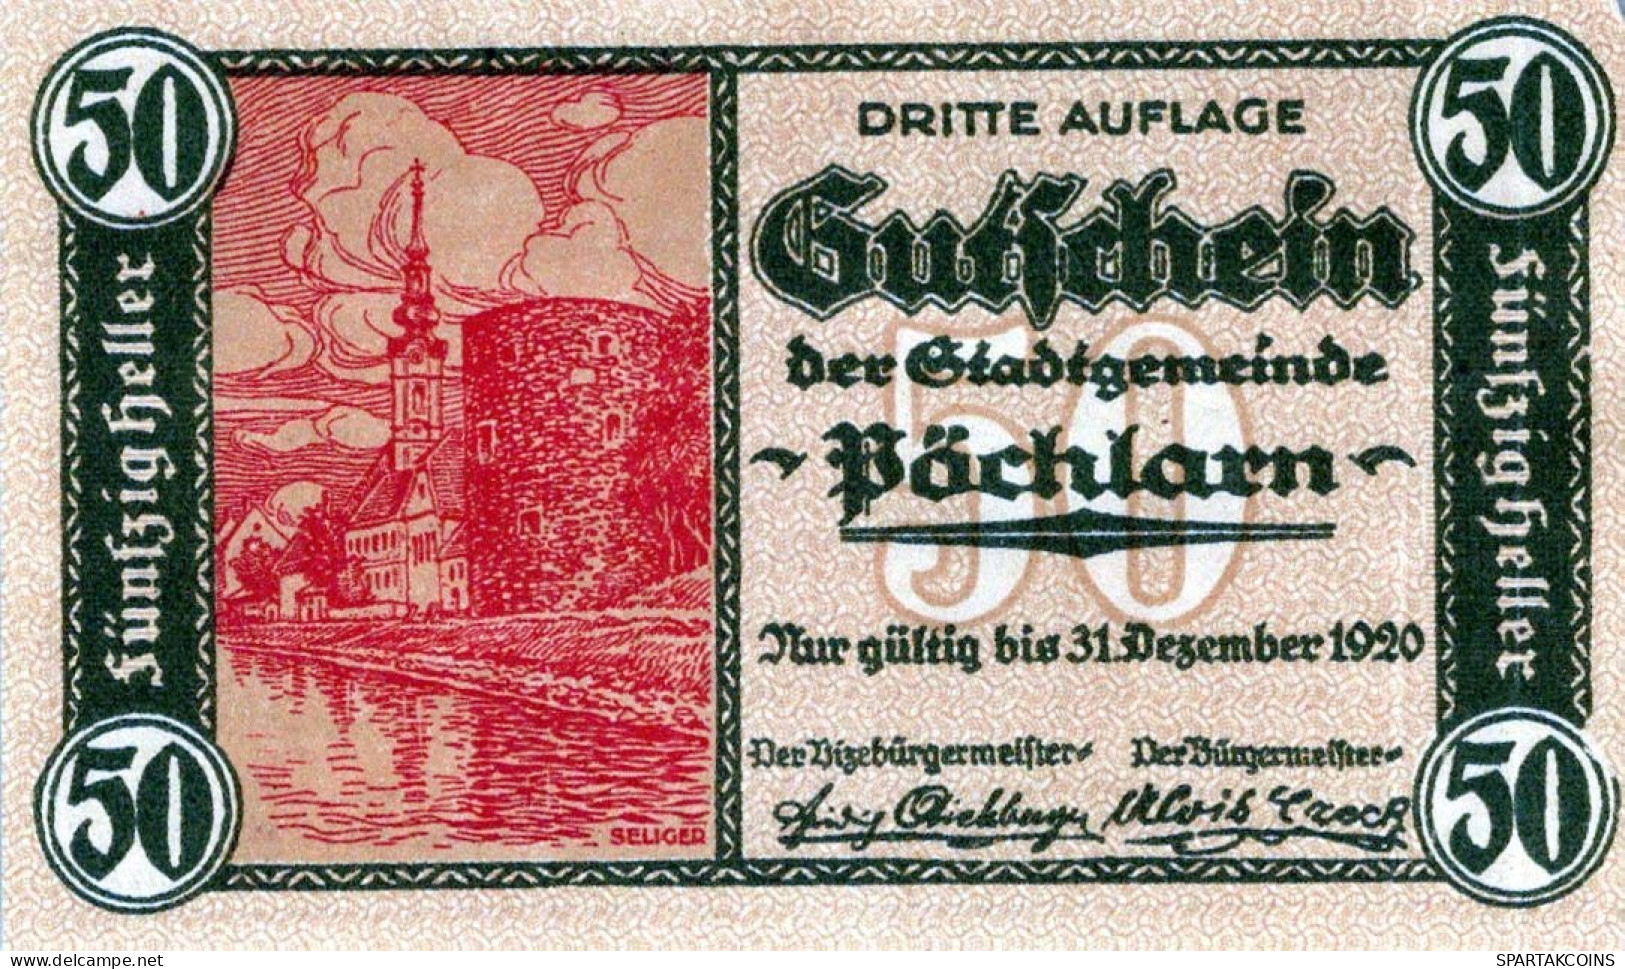 50 HELLER 1920 Stadt PoCHLARN Niedrigeren Österreich Notgeld Banknote #PI305 - [11] Local Banknote Issues